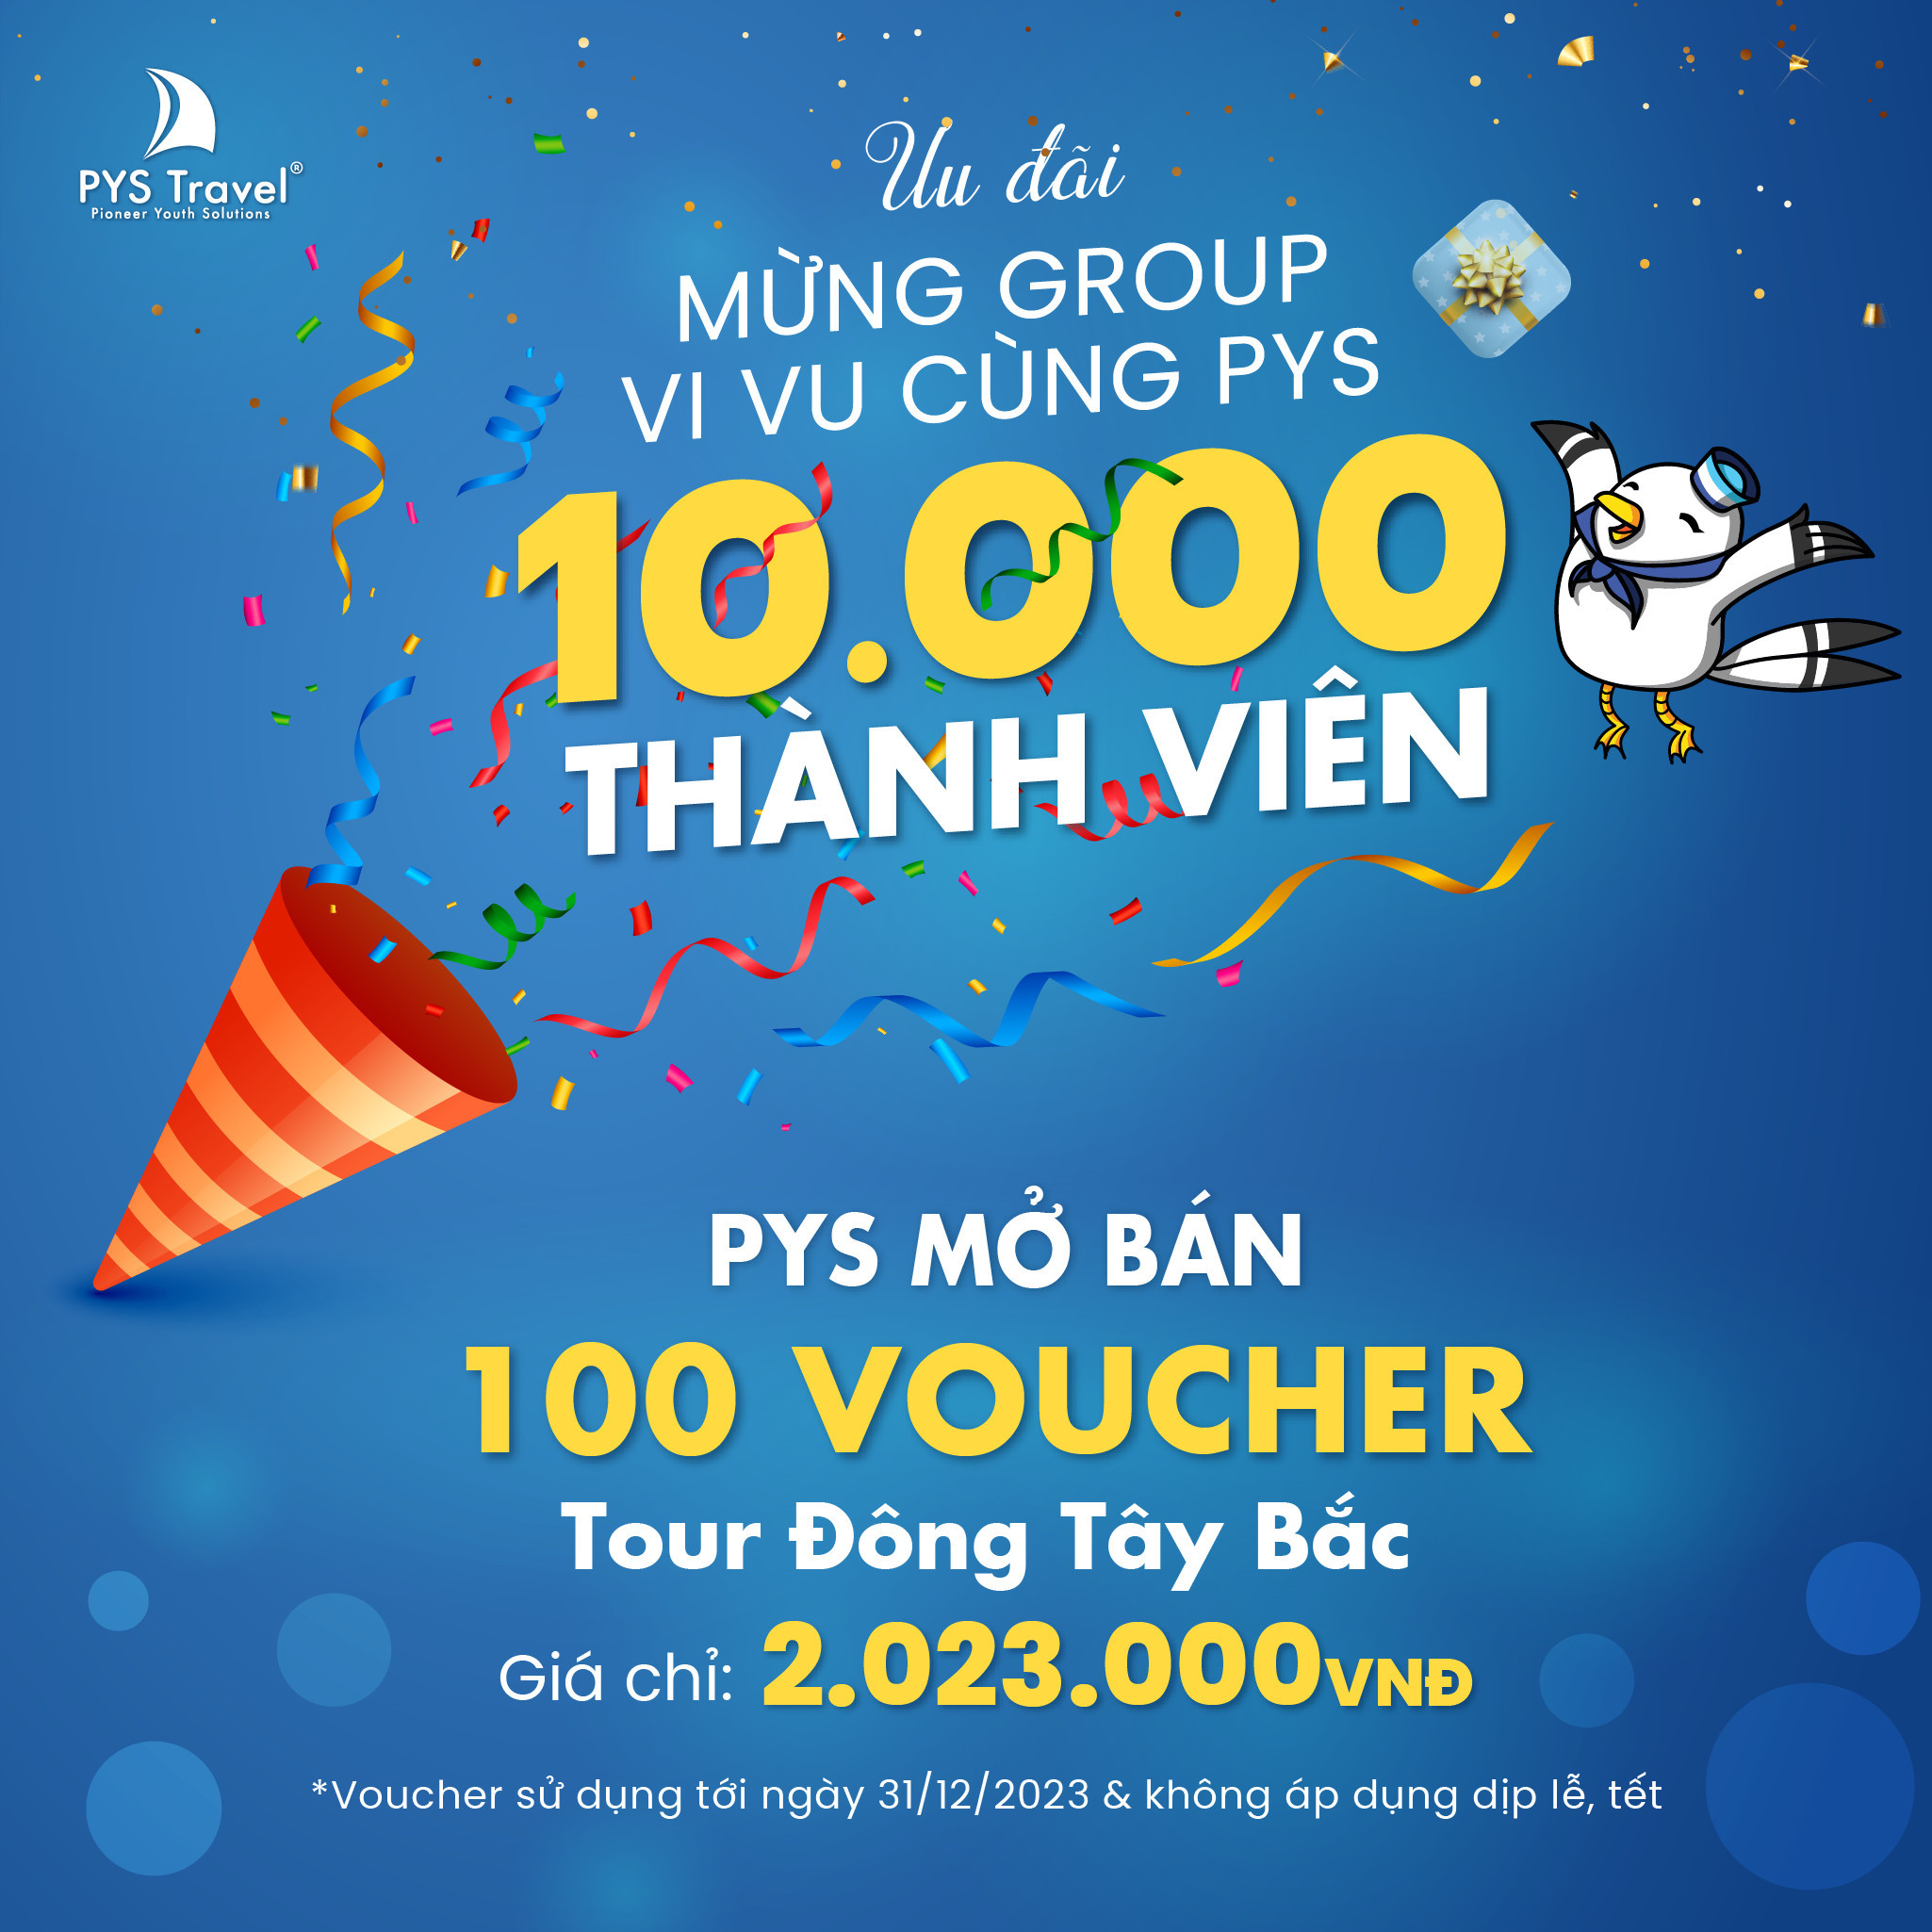 Ưu đãi: Voucher Tour Đông Tây Bắc giá chỉ 2.023K - Mừng thành viên 10.000 Vi Vu Cùng PYS